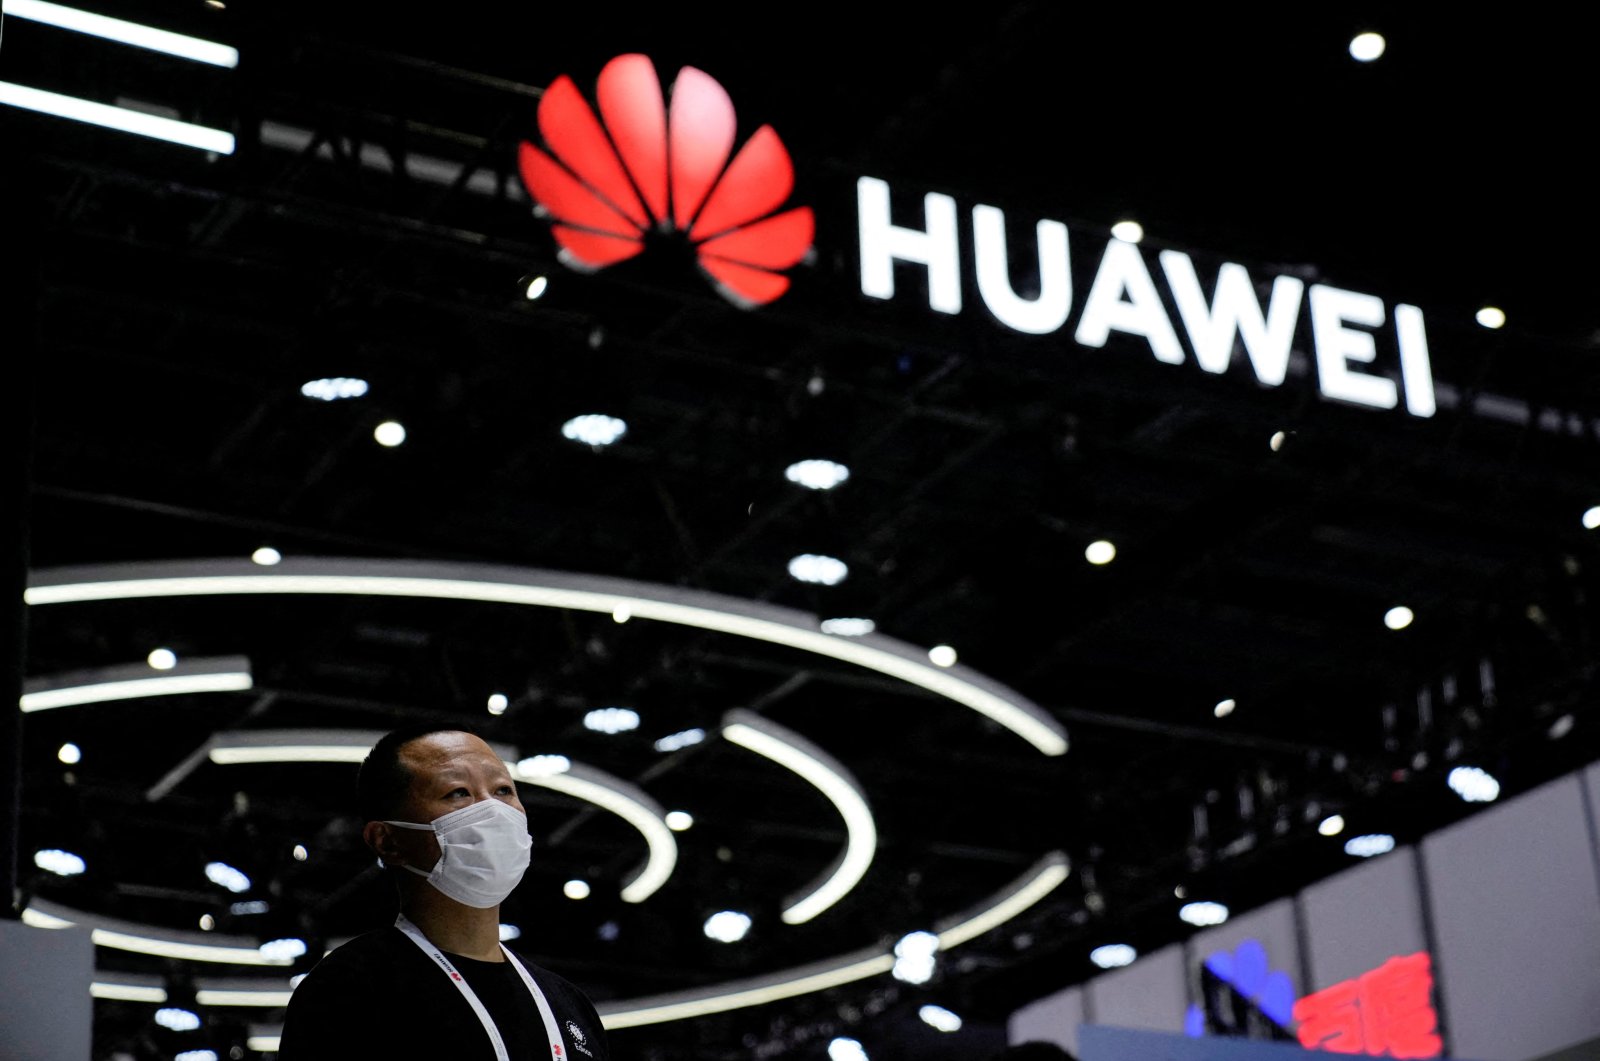 Huawei mengklaim keluar dari ‘mode krisis’ meskipun pendapatannya datar